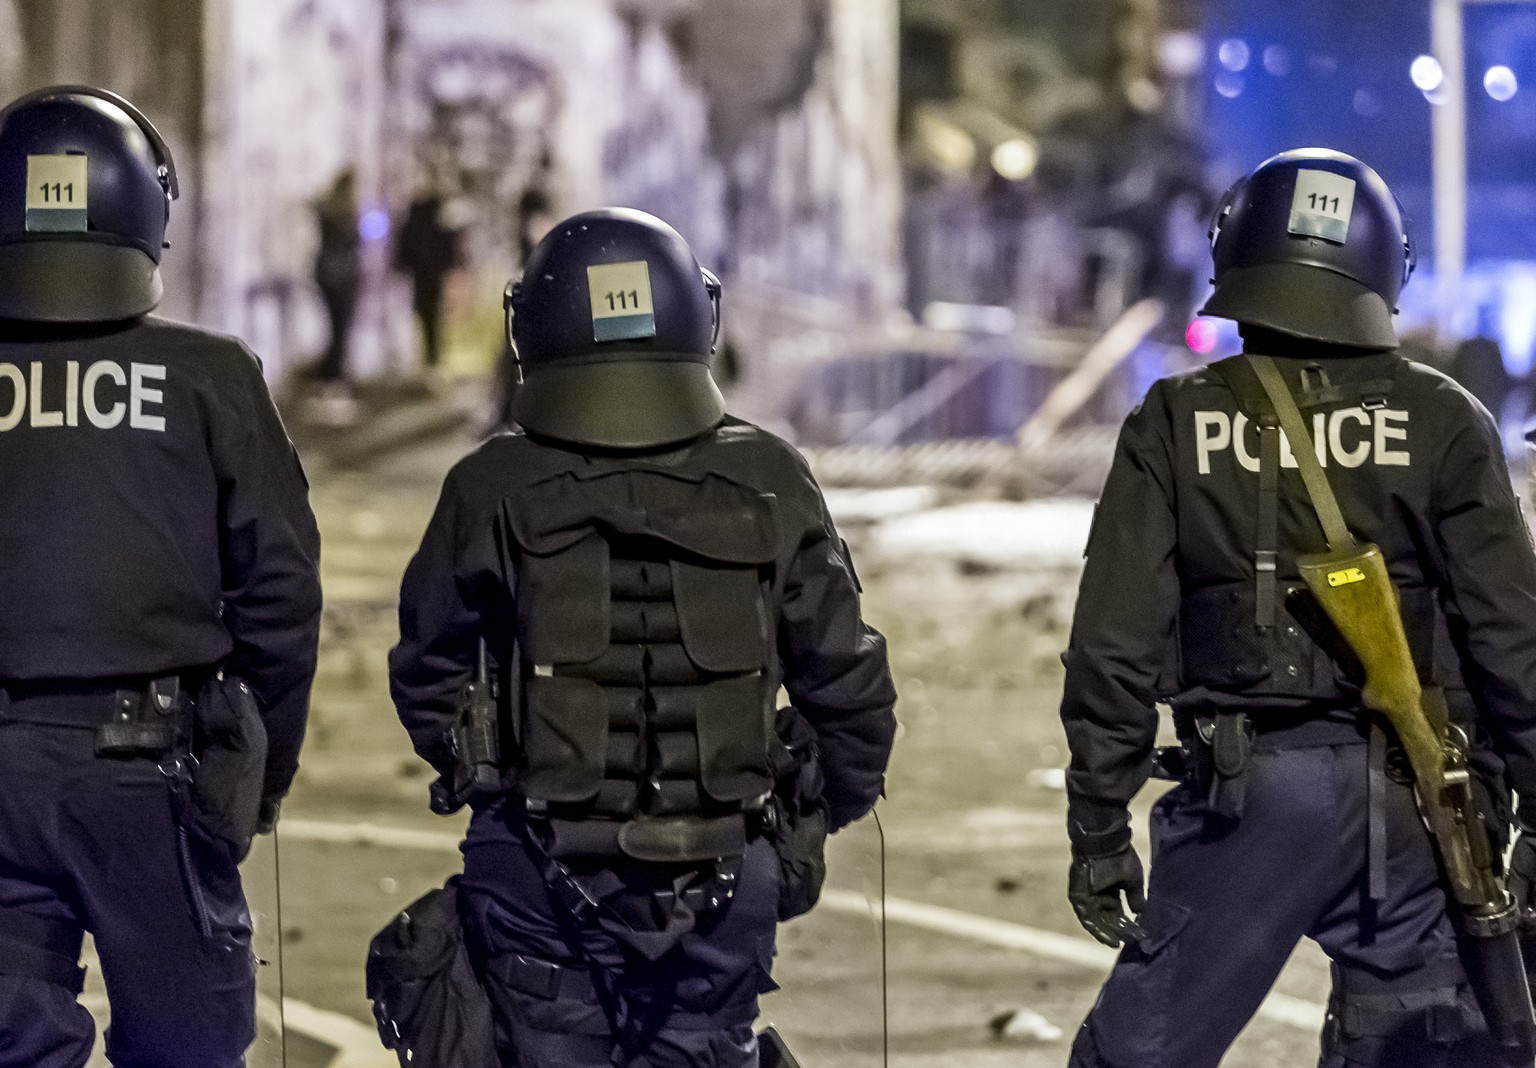 Polizei bei der Reitschule in Bern nach einer Demonstration, am Samstag, 25. Februar 2017. Bei der Protestkundgebung am Samstagabend sind mehrere Personen verletzt worden. Ein Grossaufgebot der Polize ...